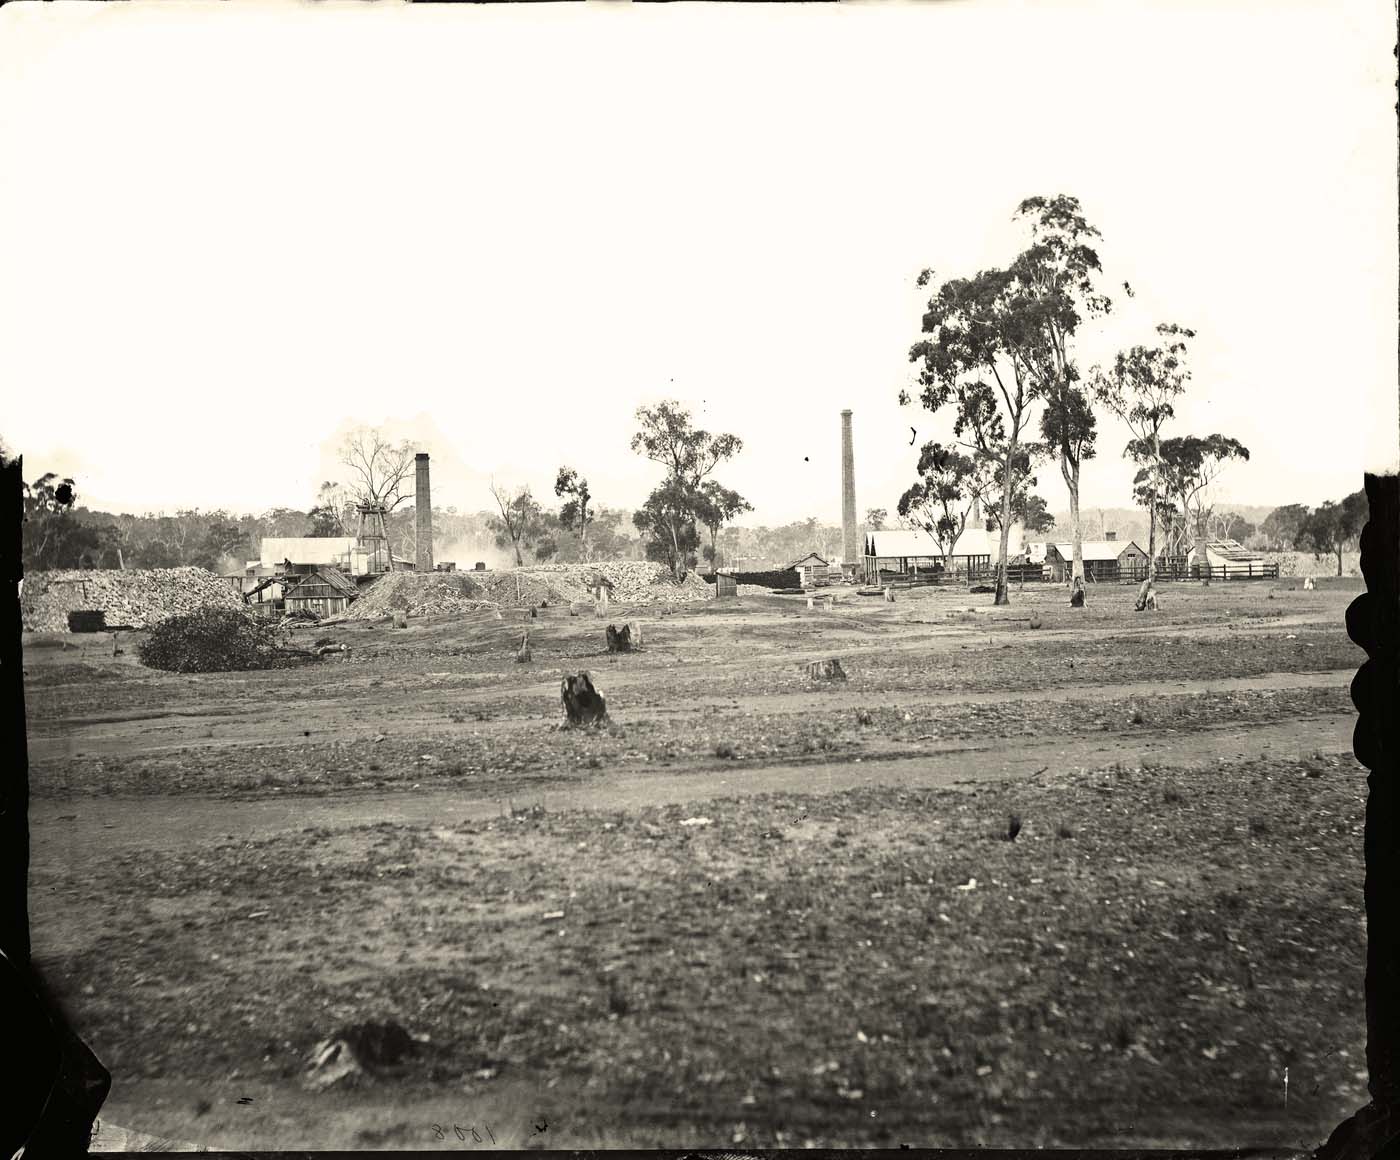 Goulburn. Gold mines, Goulburn district, circa 1875